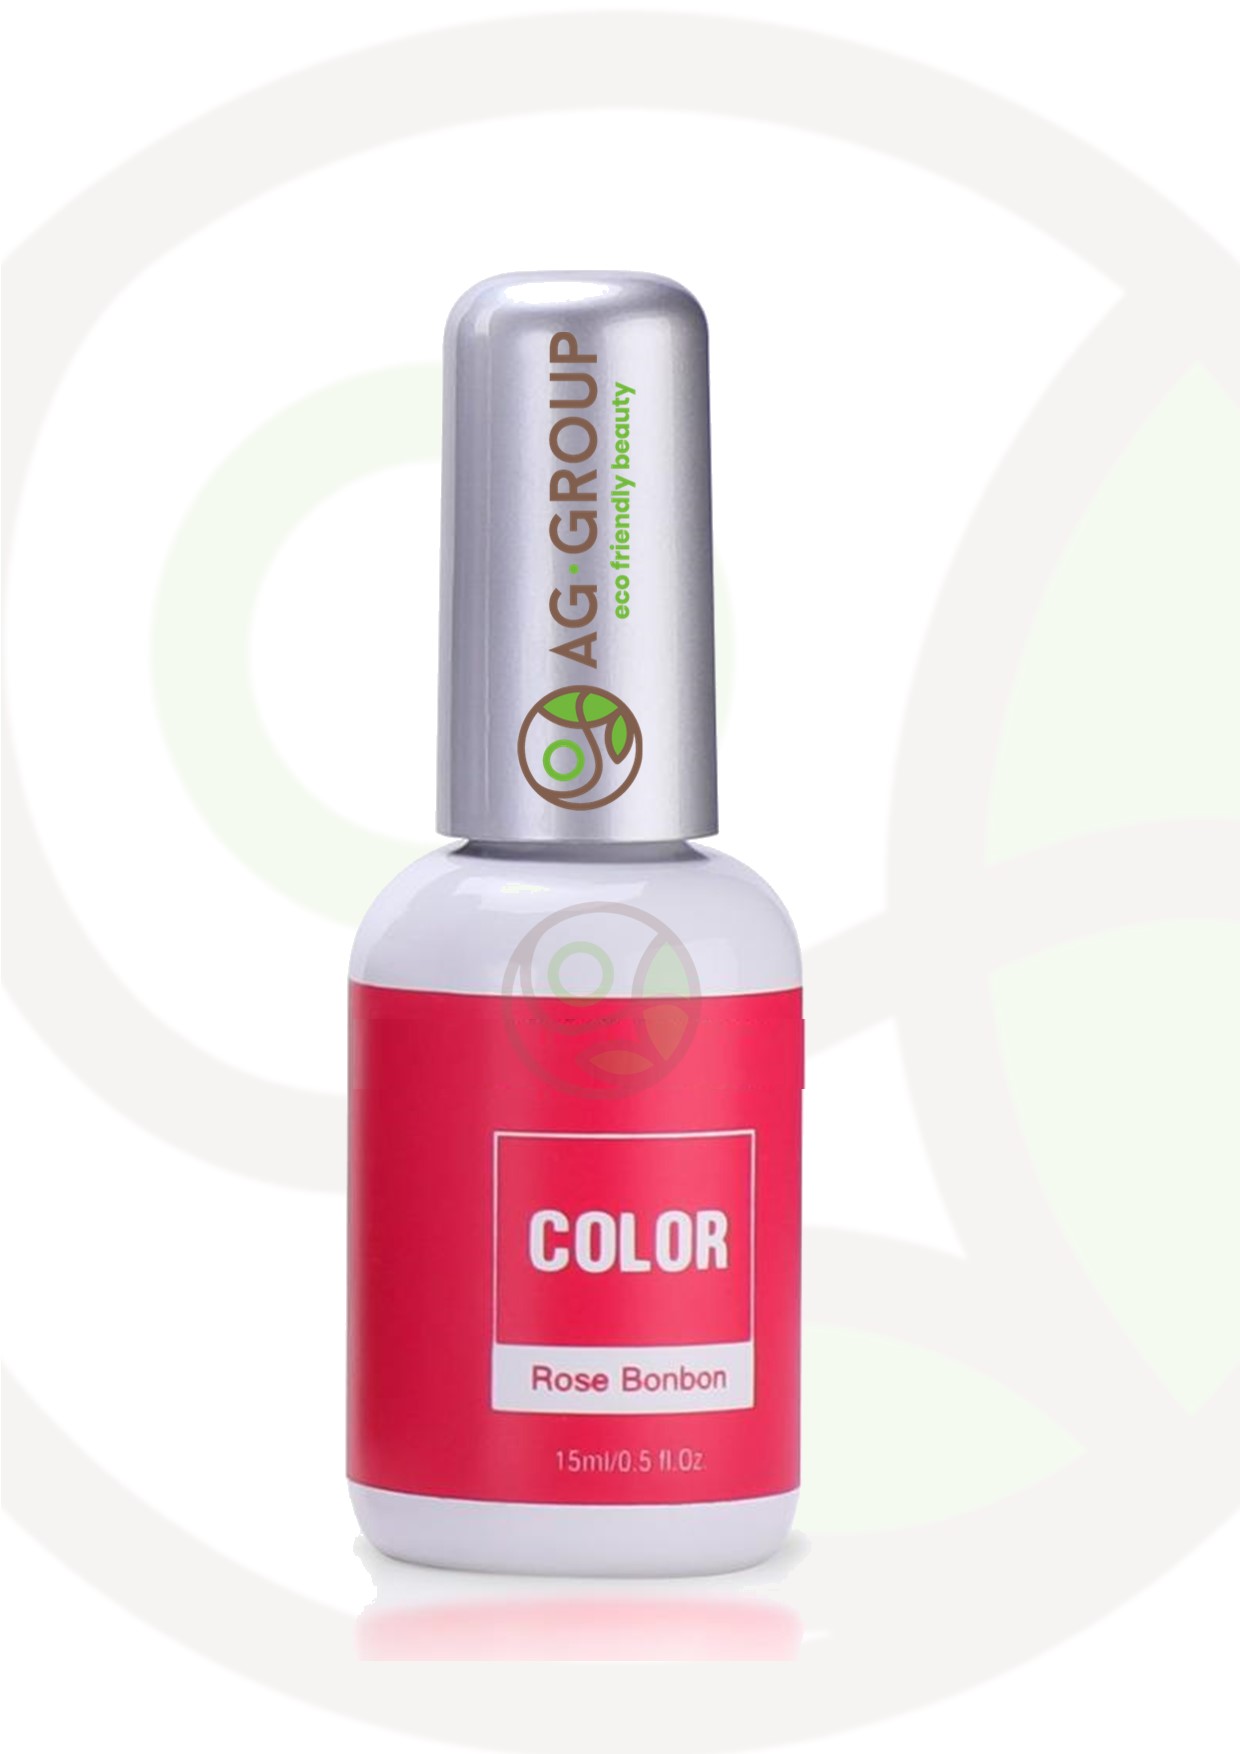 Featured image for “Gel polish soak -off led/uv- color rose bonbon”